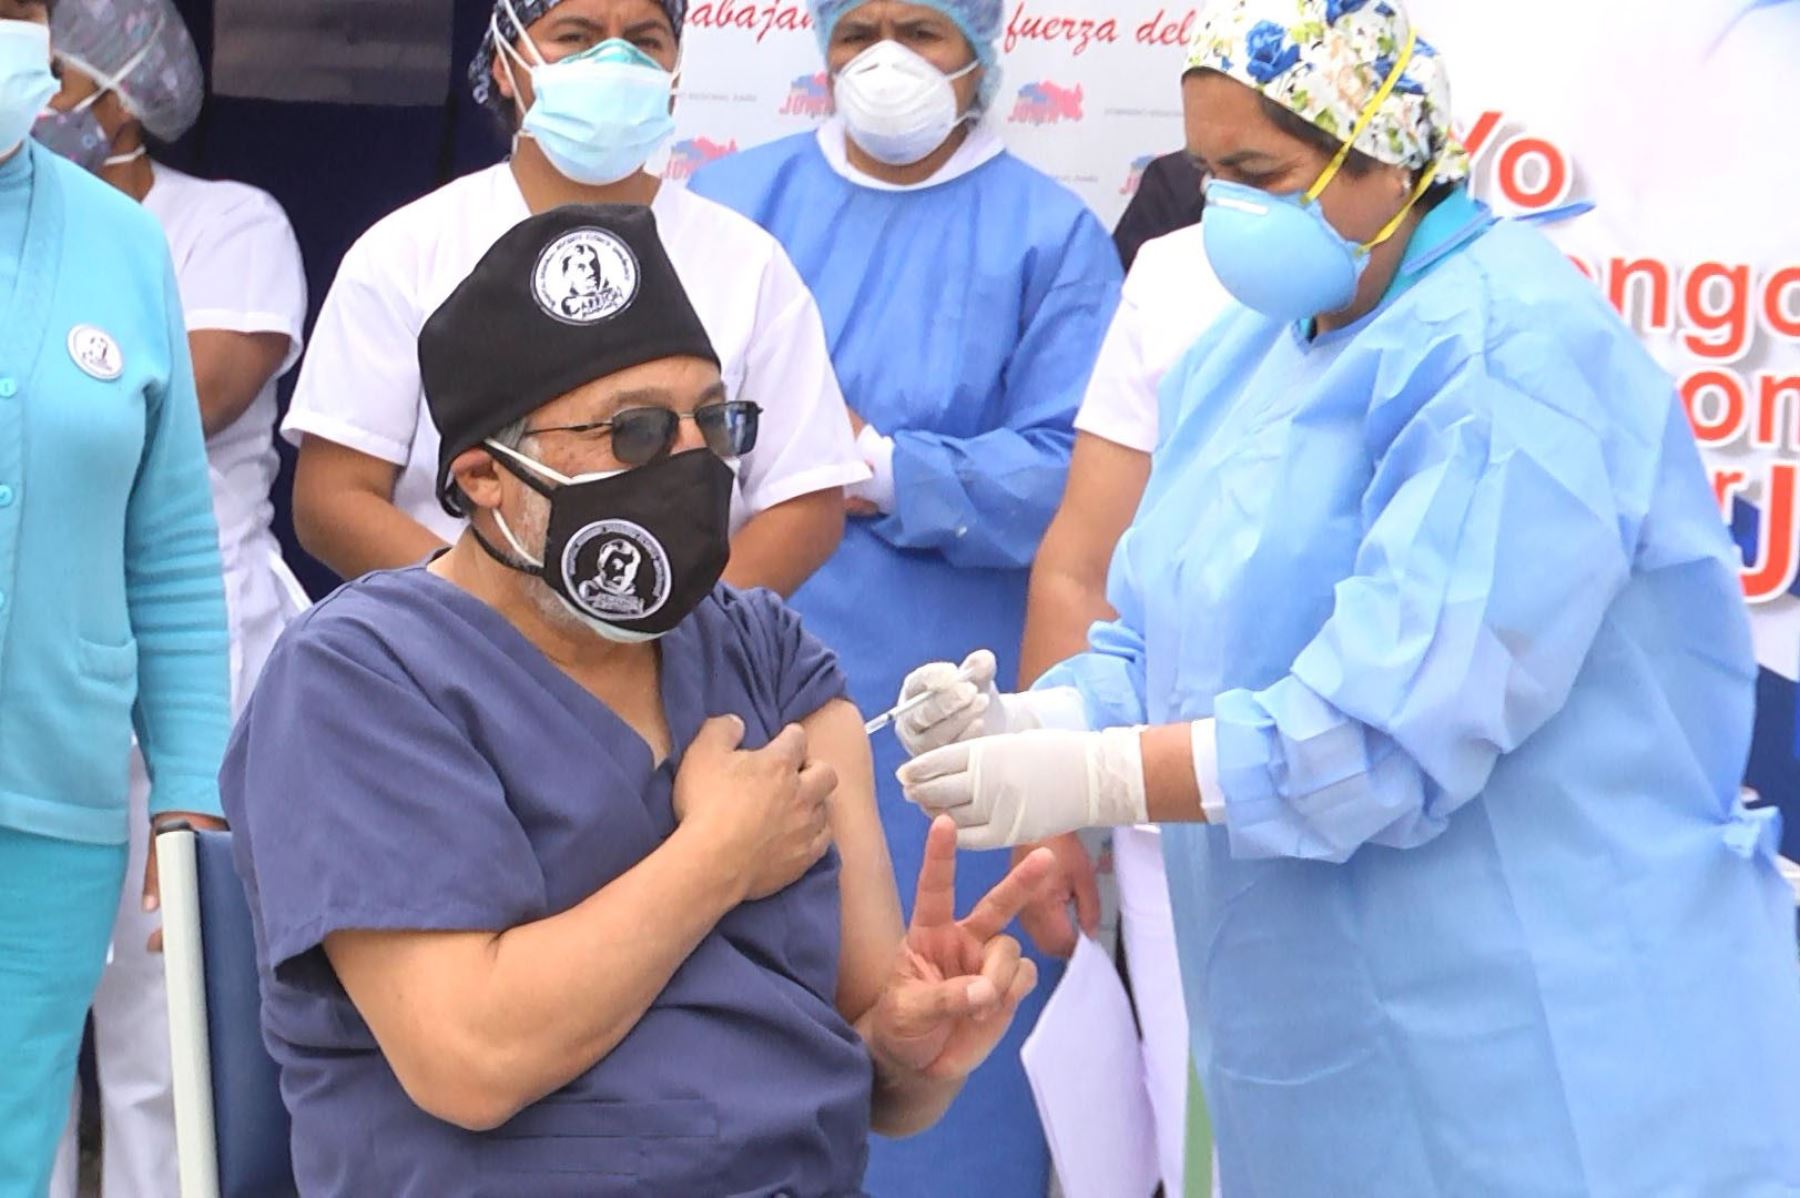 Médico José Jordán Morales recibe la primera dosis de la vacuna contra el covid-19 en la región Junín. Foto: ANDINA / Pedro Tinoco.